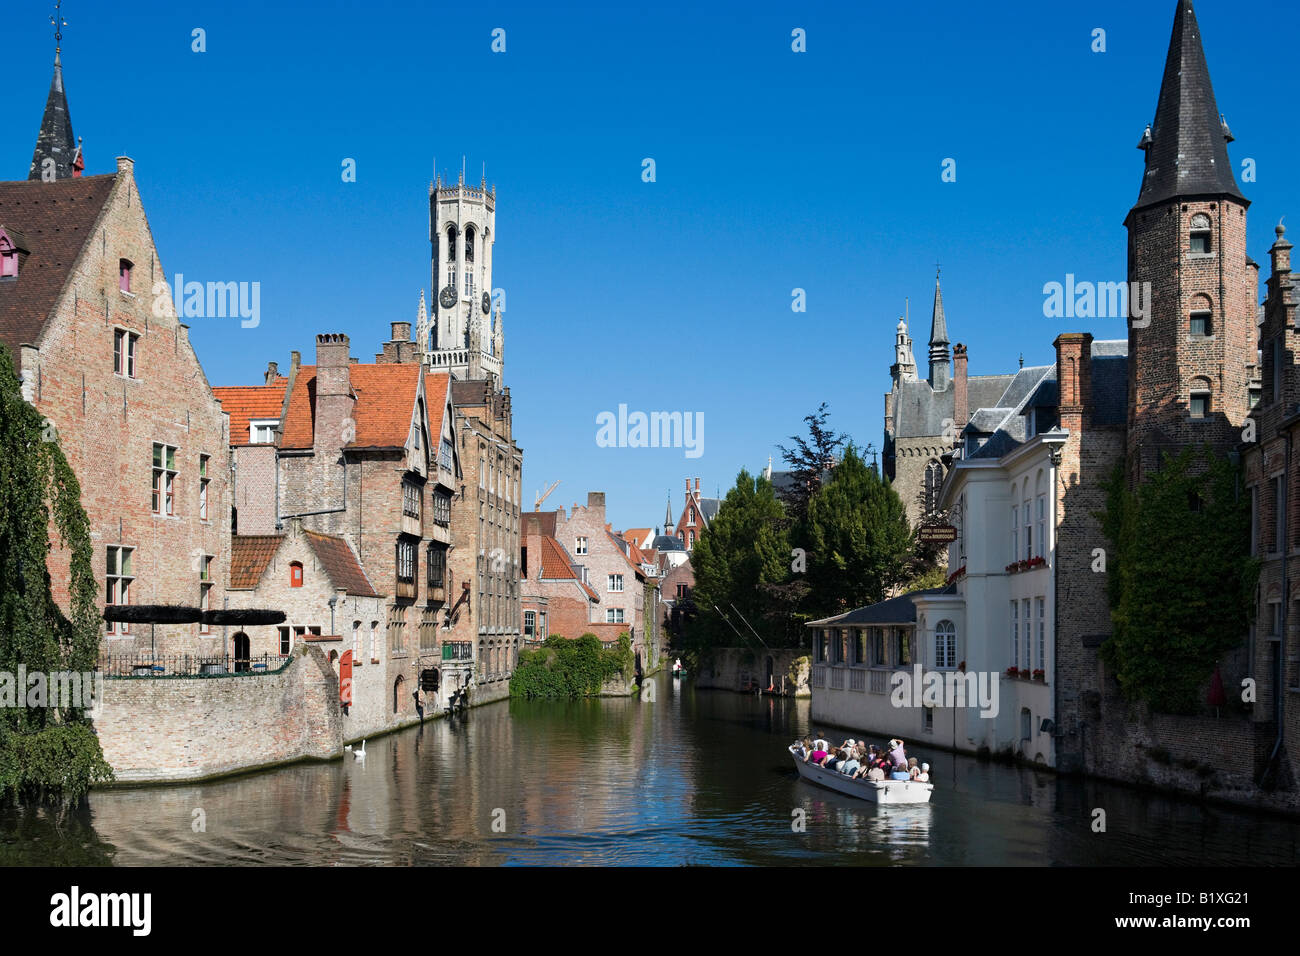 Voyage en bateau sur un canal dans la vieille ville, Bruges, Belgique Banque D'Images